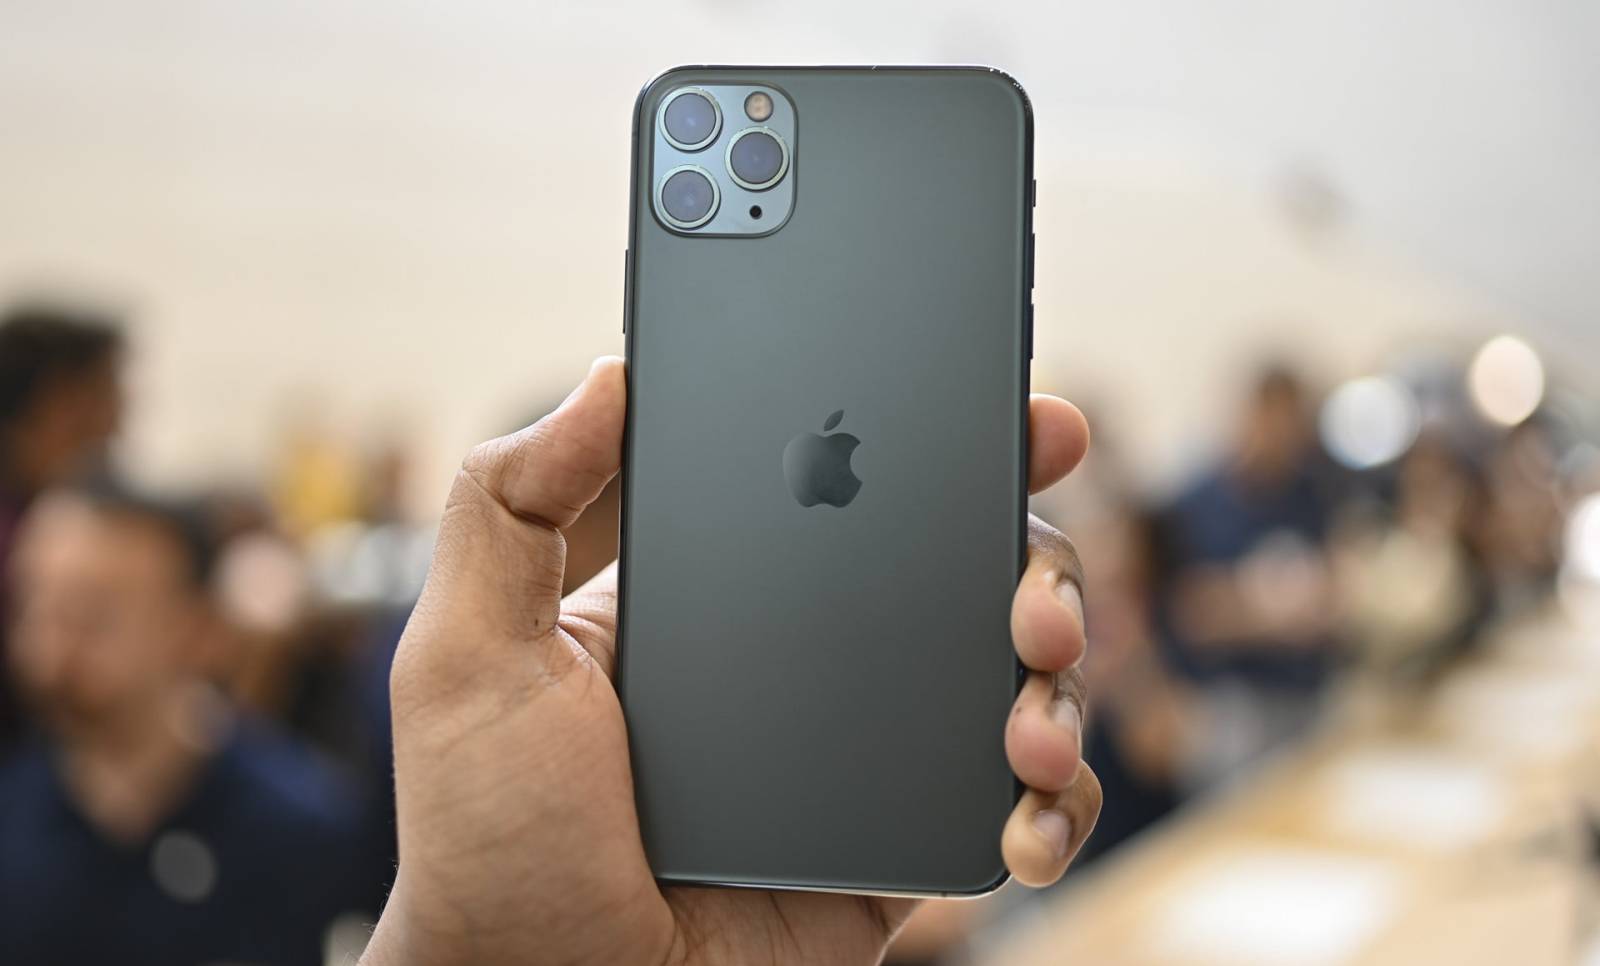 Apple enregistre des ventes AU-DESSUS DES ATTENTES pour la série iPhone 11